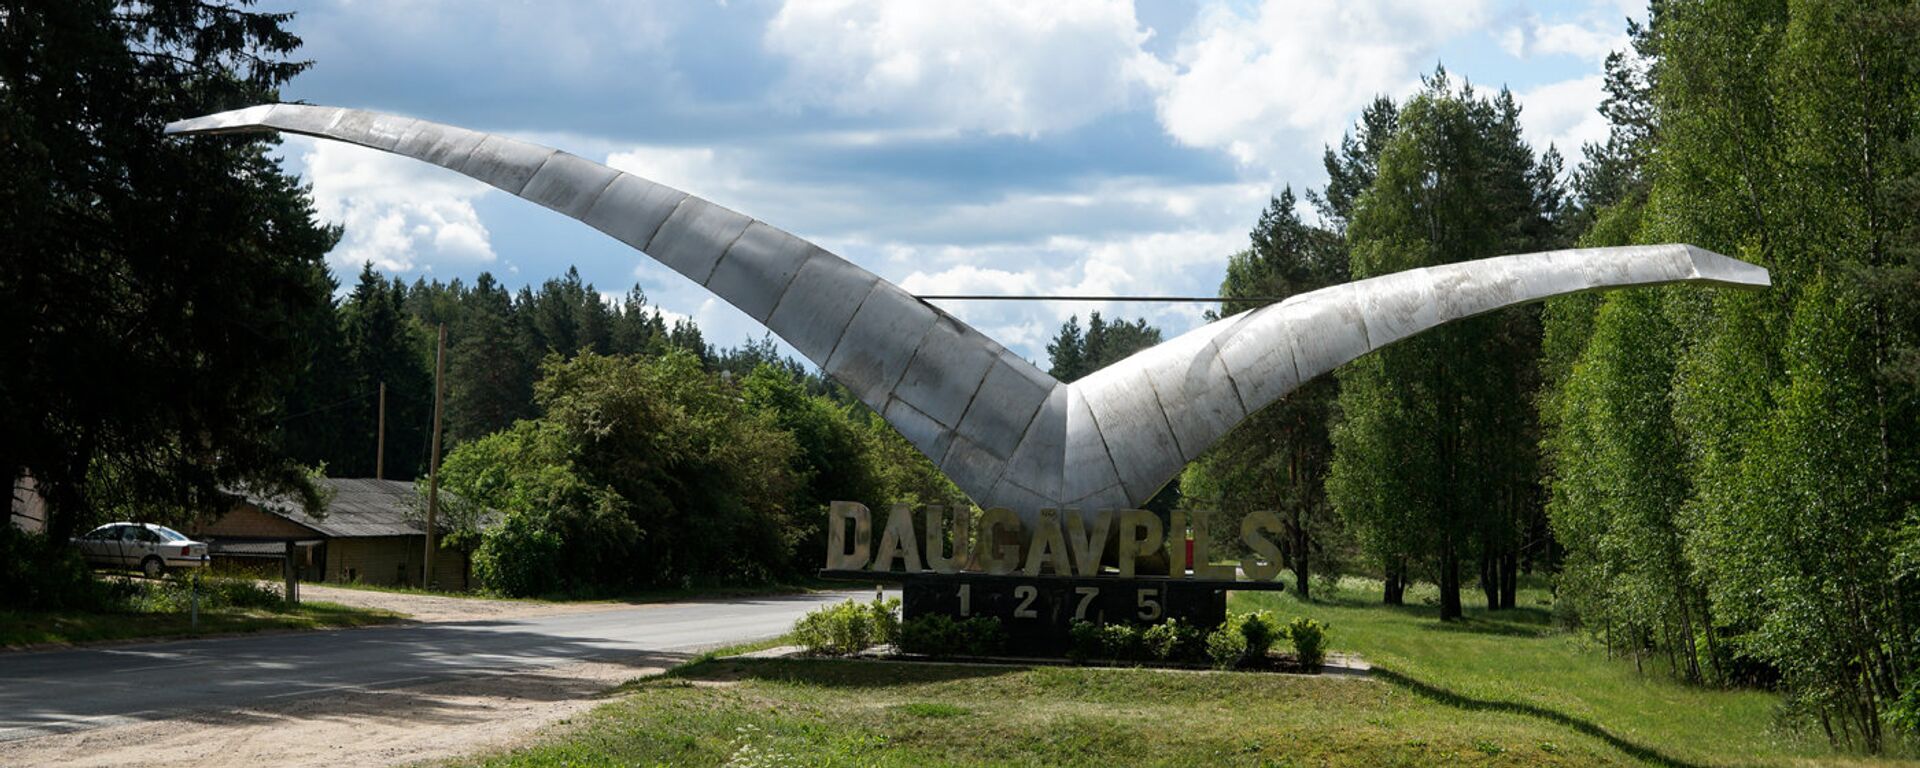 Памятник основанию Даугавпилса на въезде в город - Sputnik Латвия, 1920, 13.07.2021